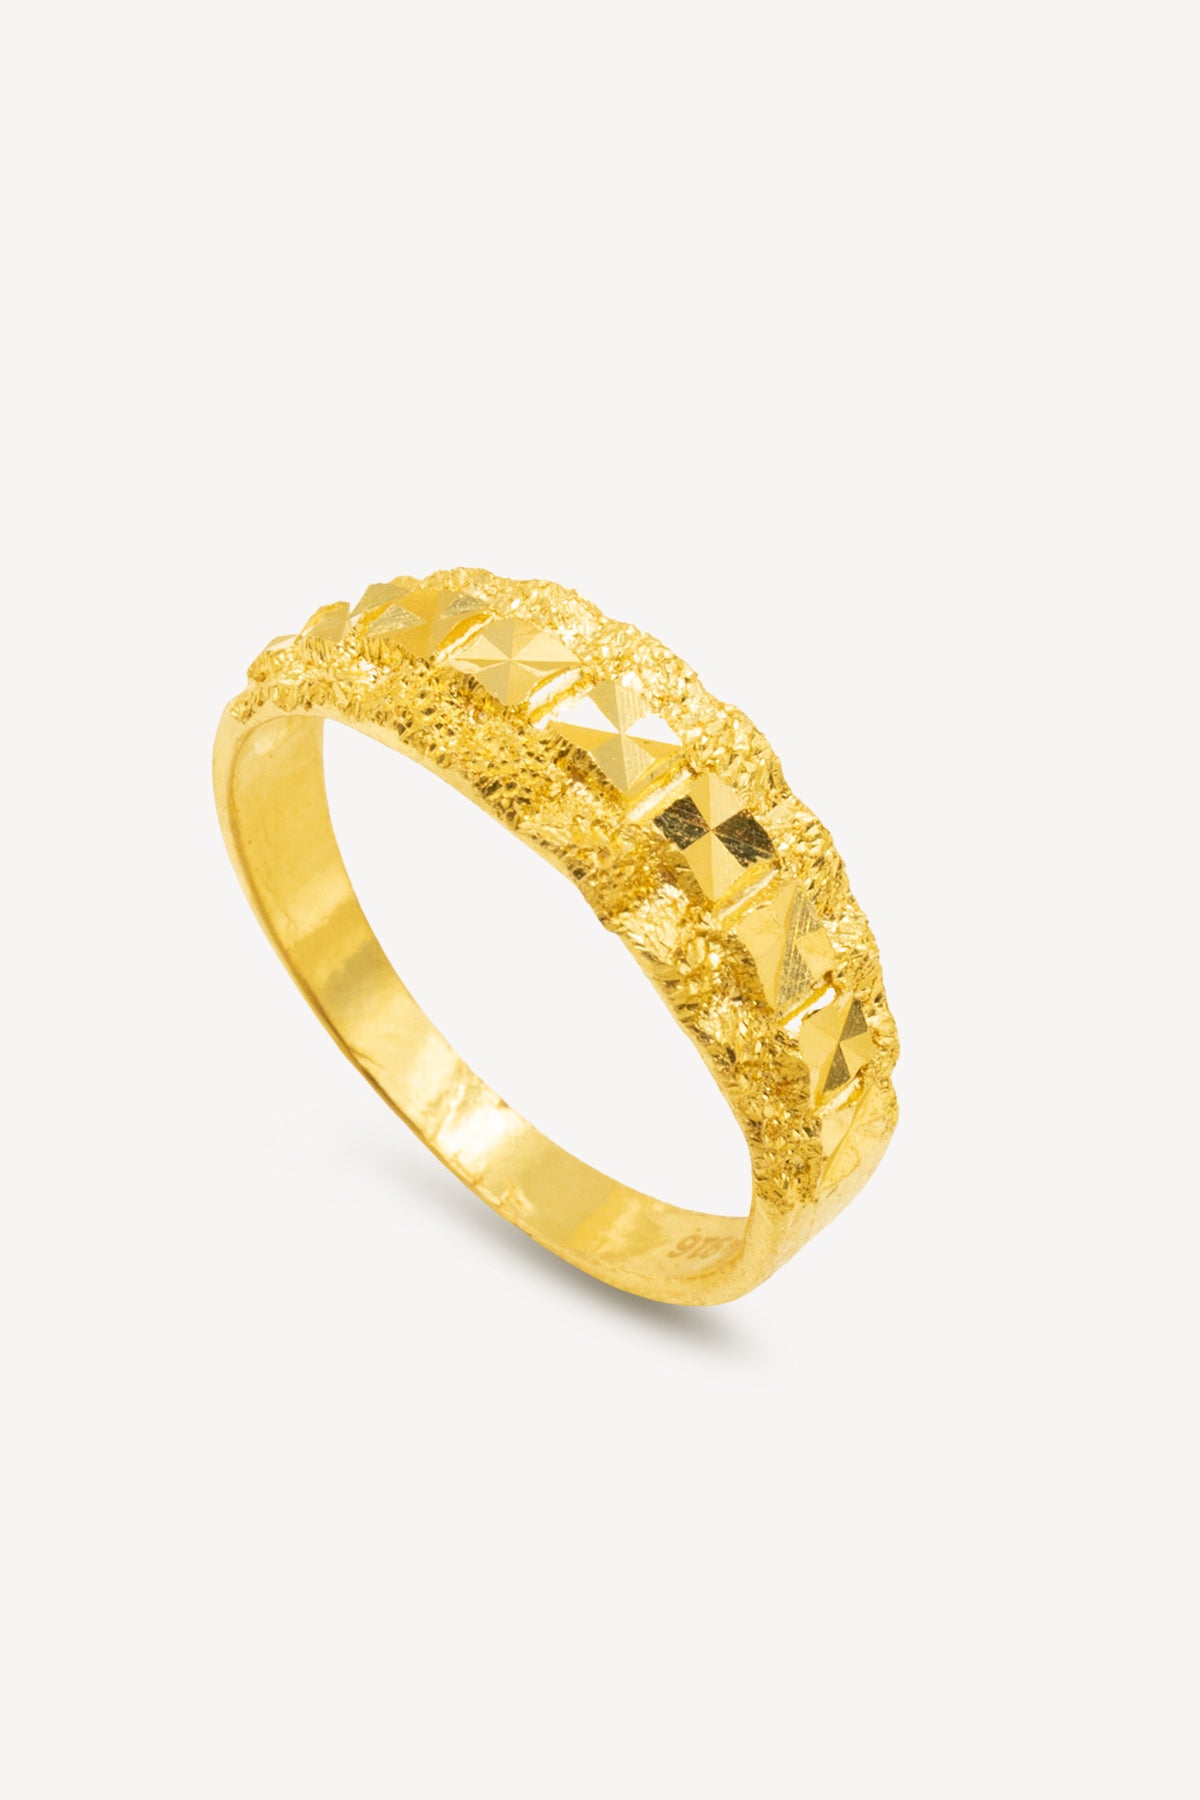 22K Gold Ring For Men - 235-GR8248 in 4.450 Grams